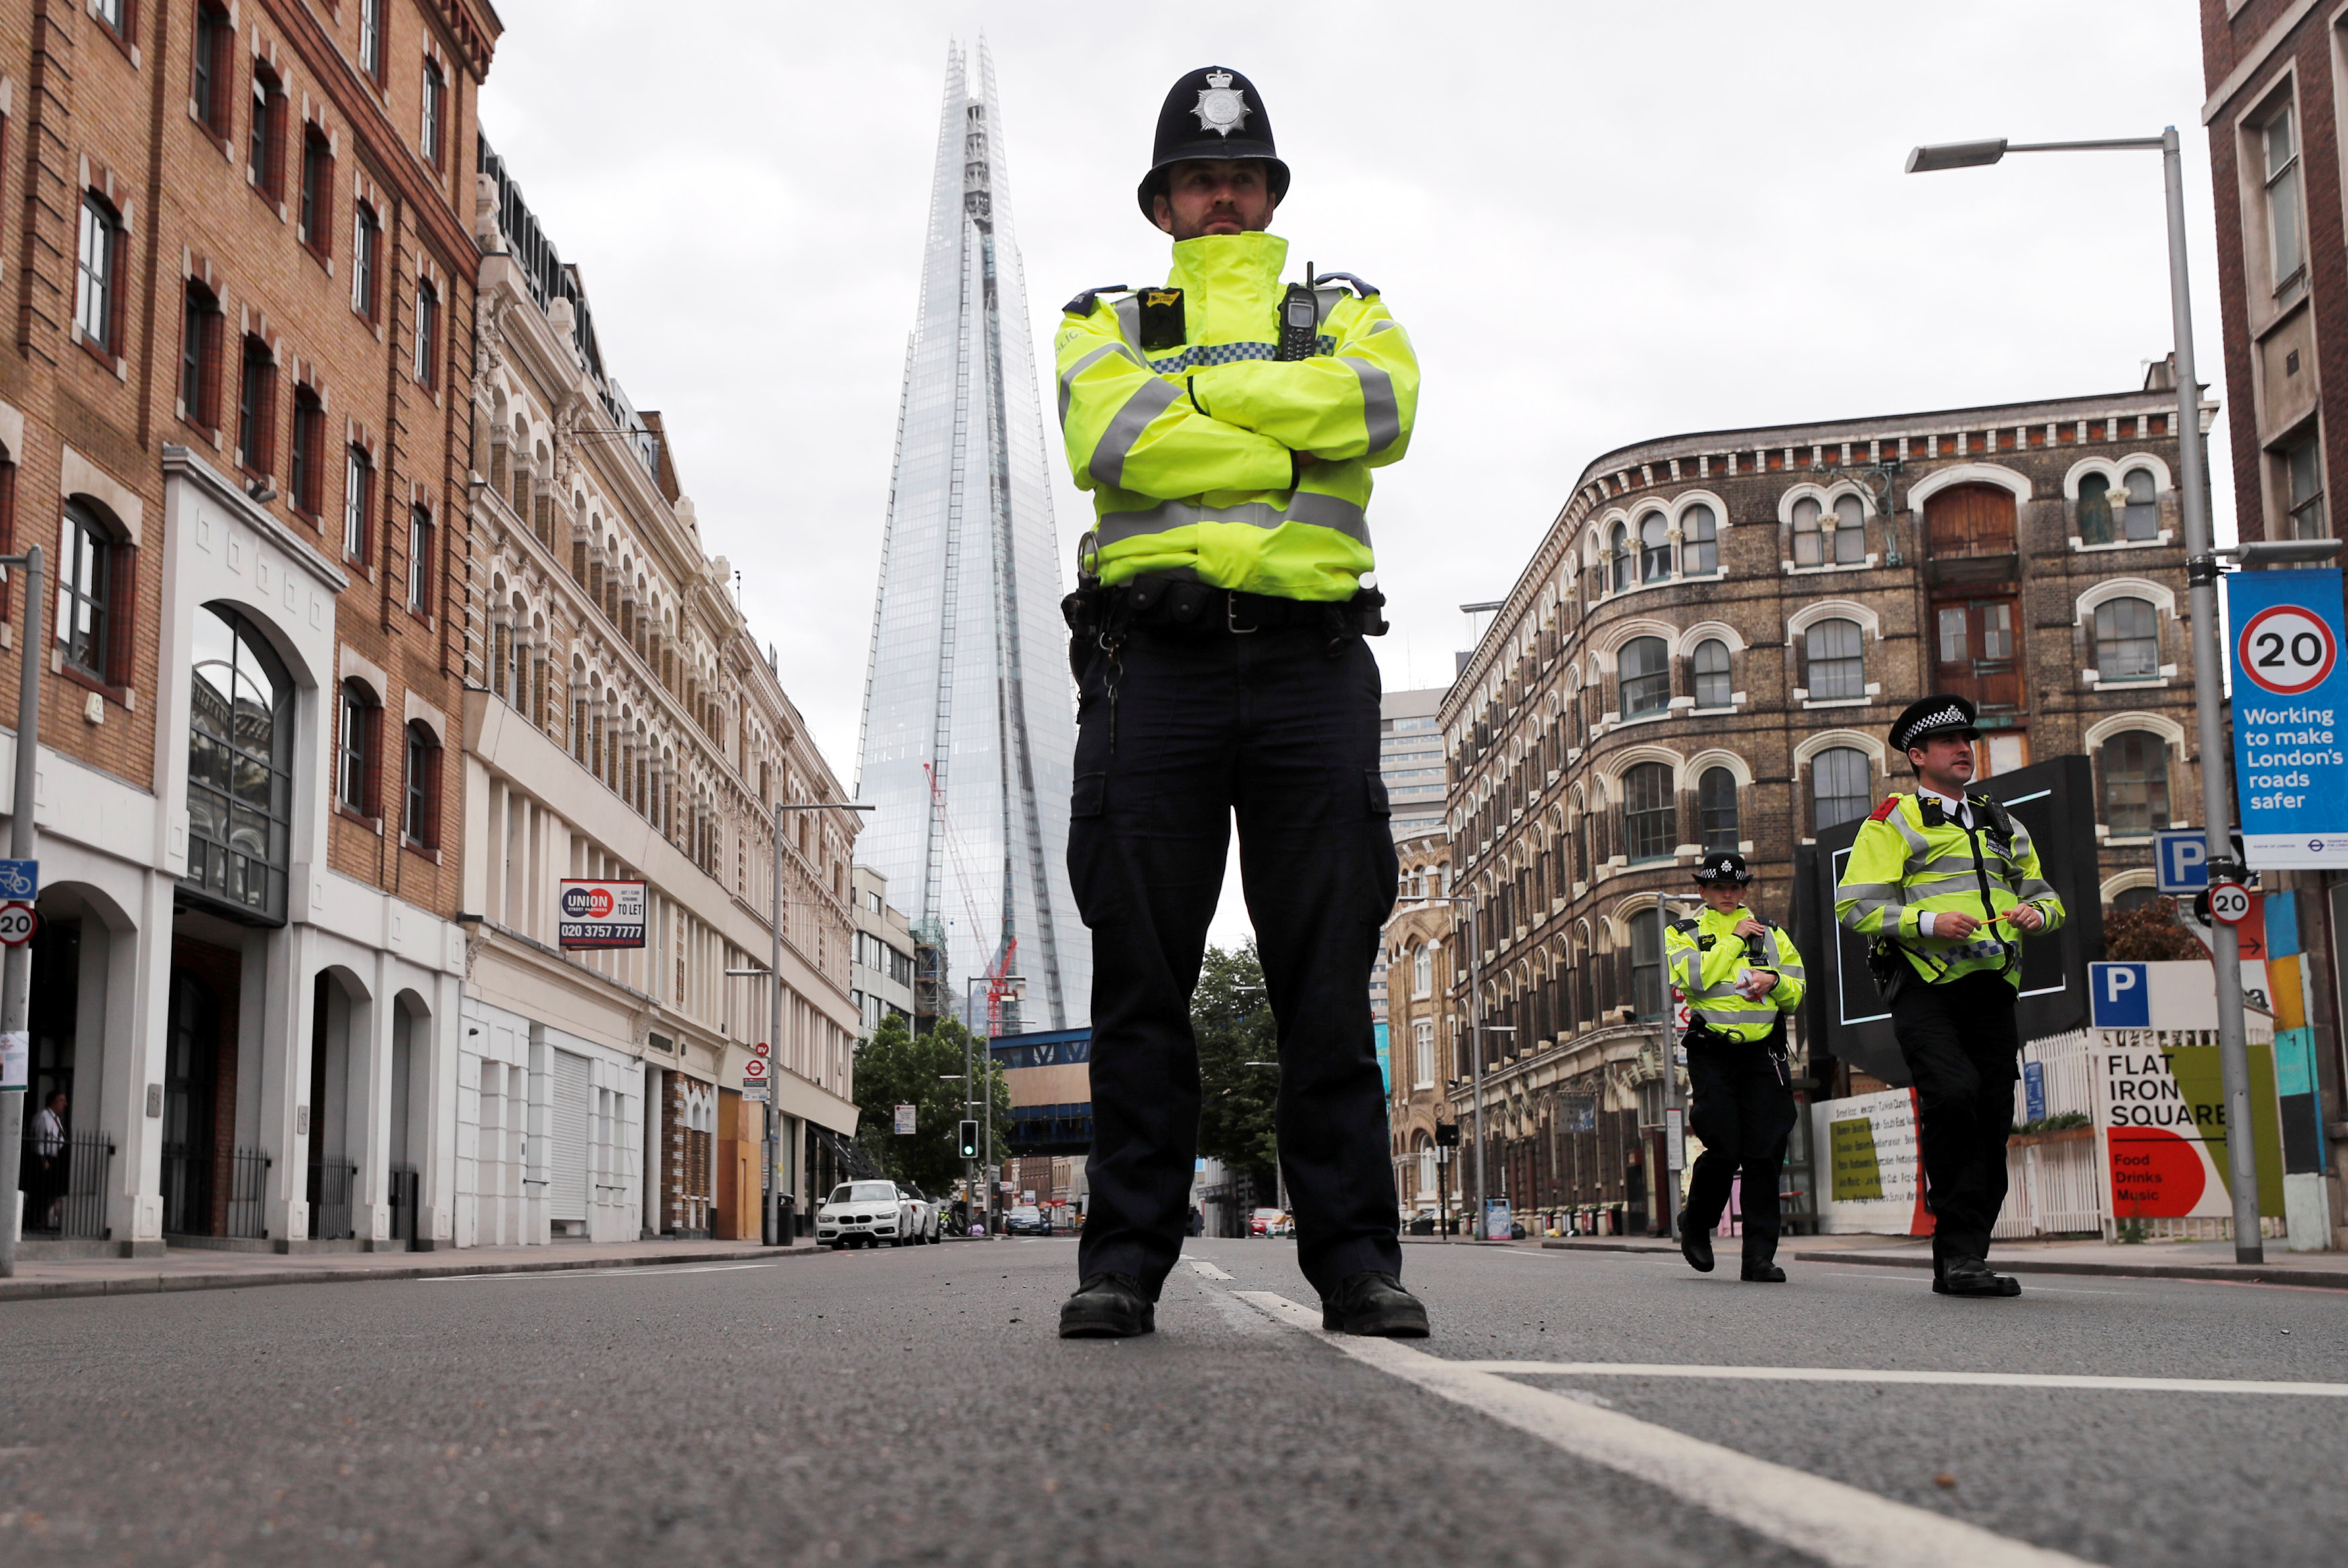 Λονδίνο: Αστυνομικοί σπάνε το παράθυρο οδηγού λίγο μετά από συνέντευξή του κατά της αστυνομίας